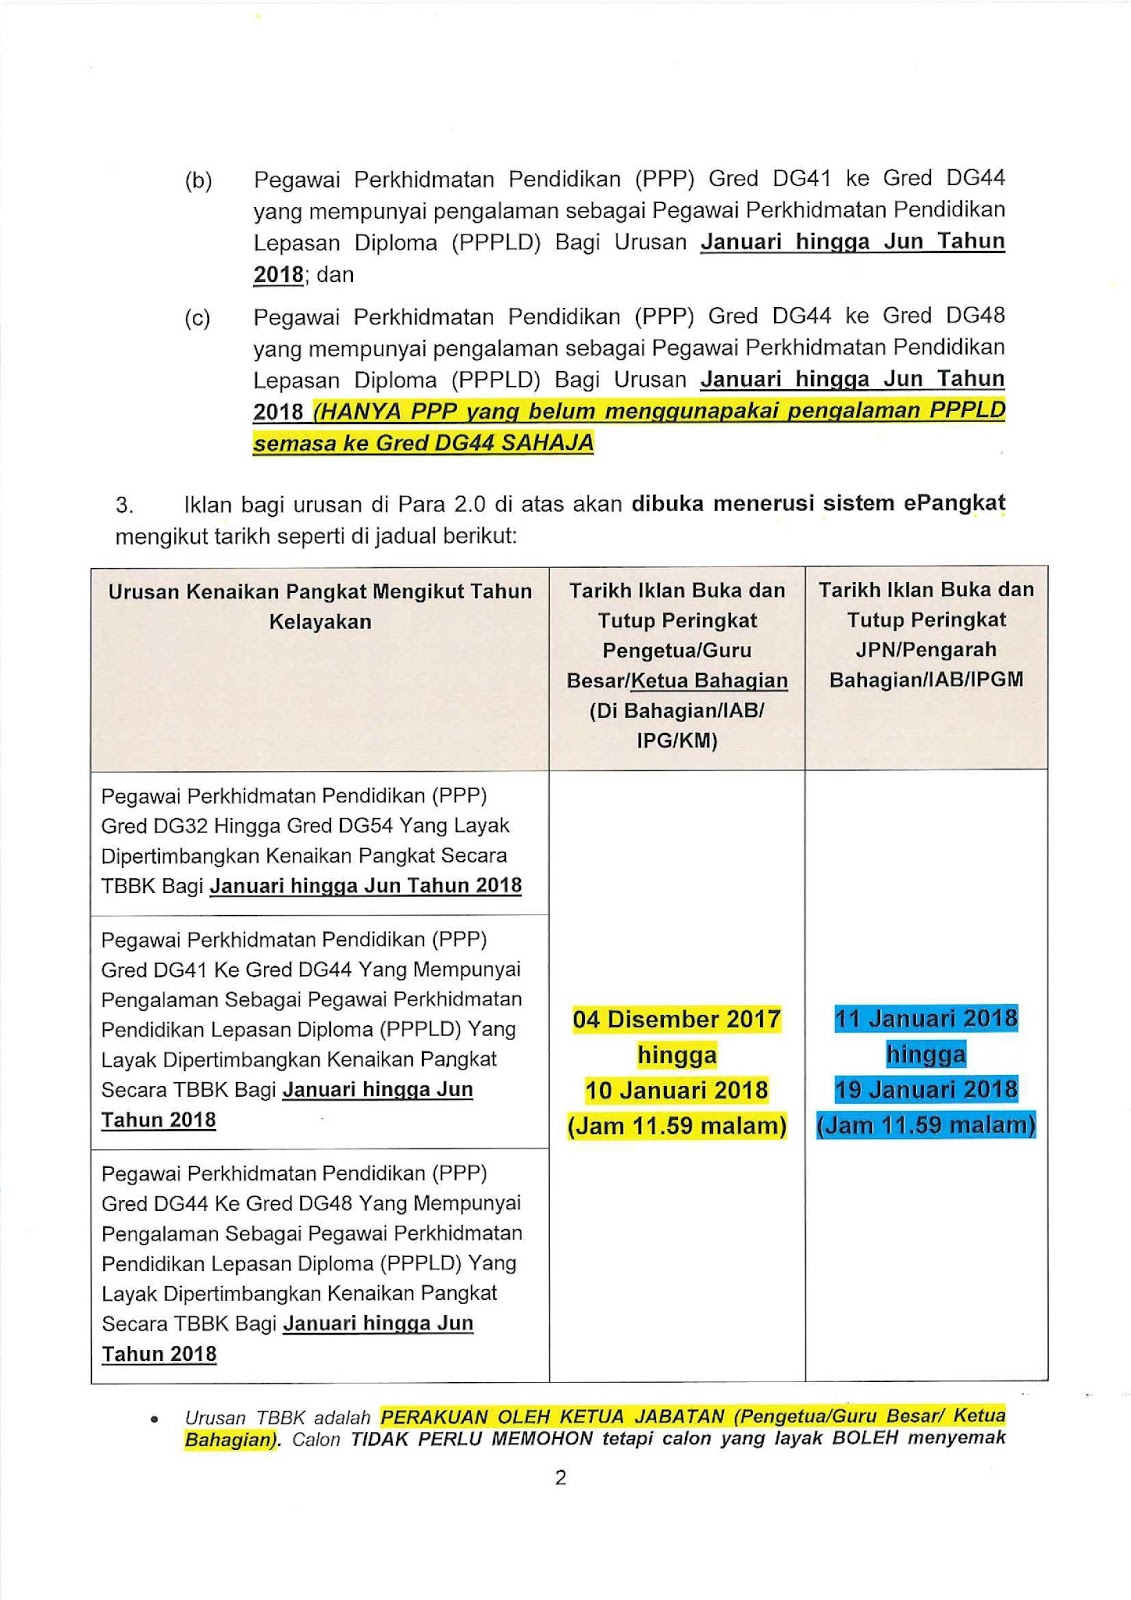 Urusan Kenaikan Pangkat Bagi Pegawai Perkhidmatan Pendidikan Ppp Gred Dg32 Hingga Gred Dg54 Secara Tbkk Di Kementerian Pendidikan Malaysia Bagi Januari Hingga Jun Tahun 2018